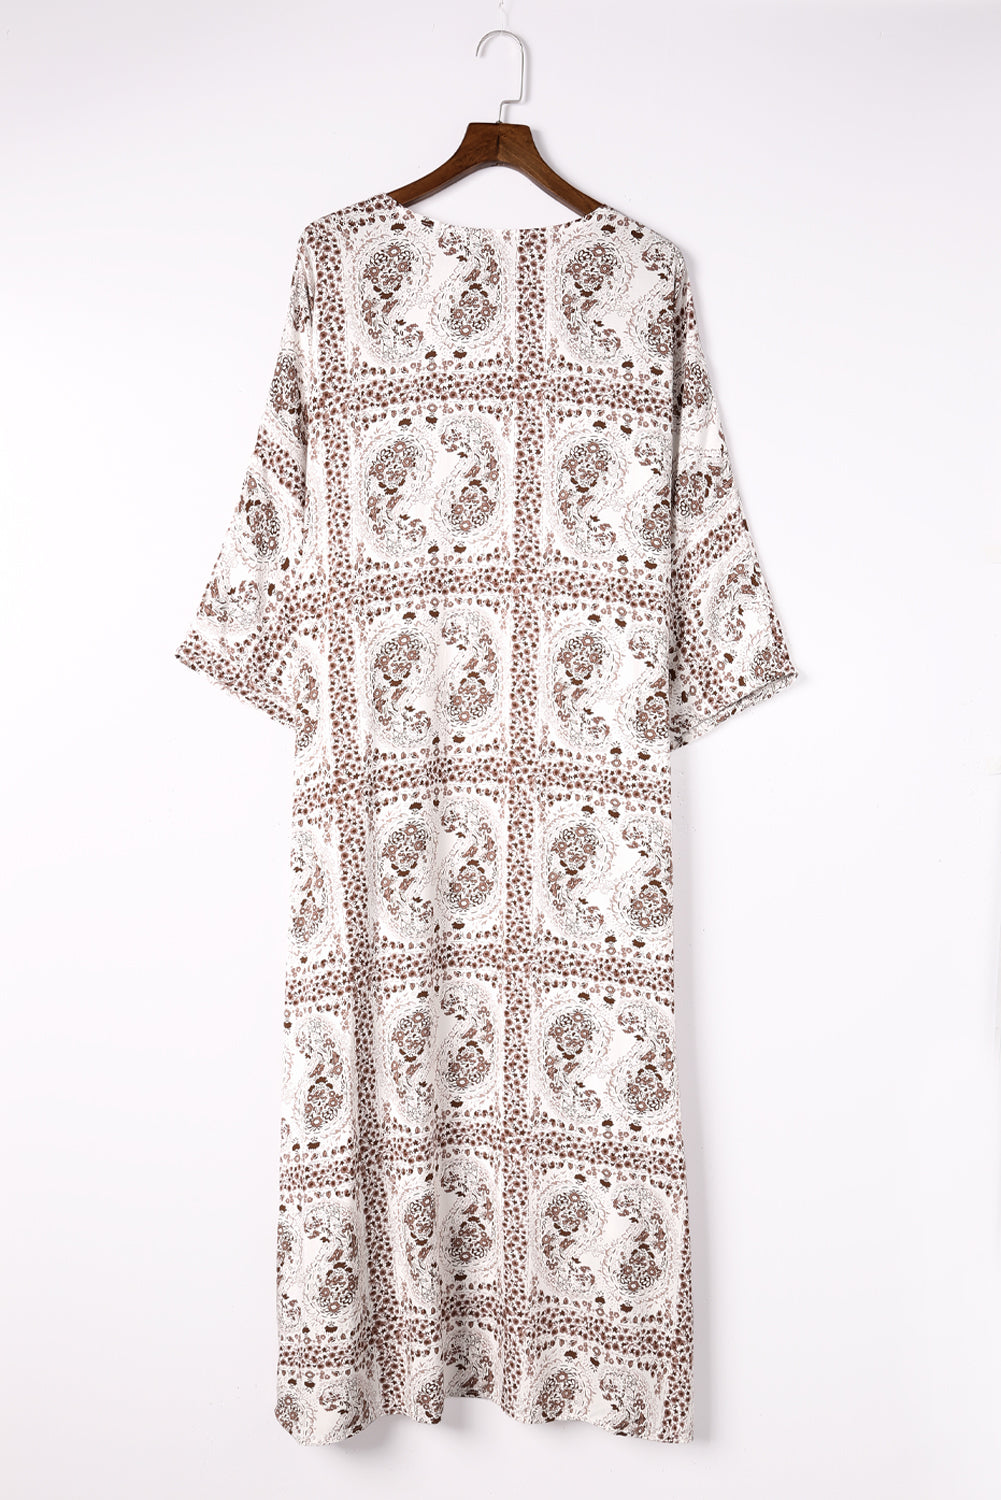 Dolman Sleeves Printed Kimono Kimonos JT's Designer Fashion